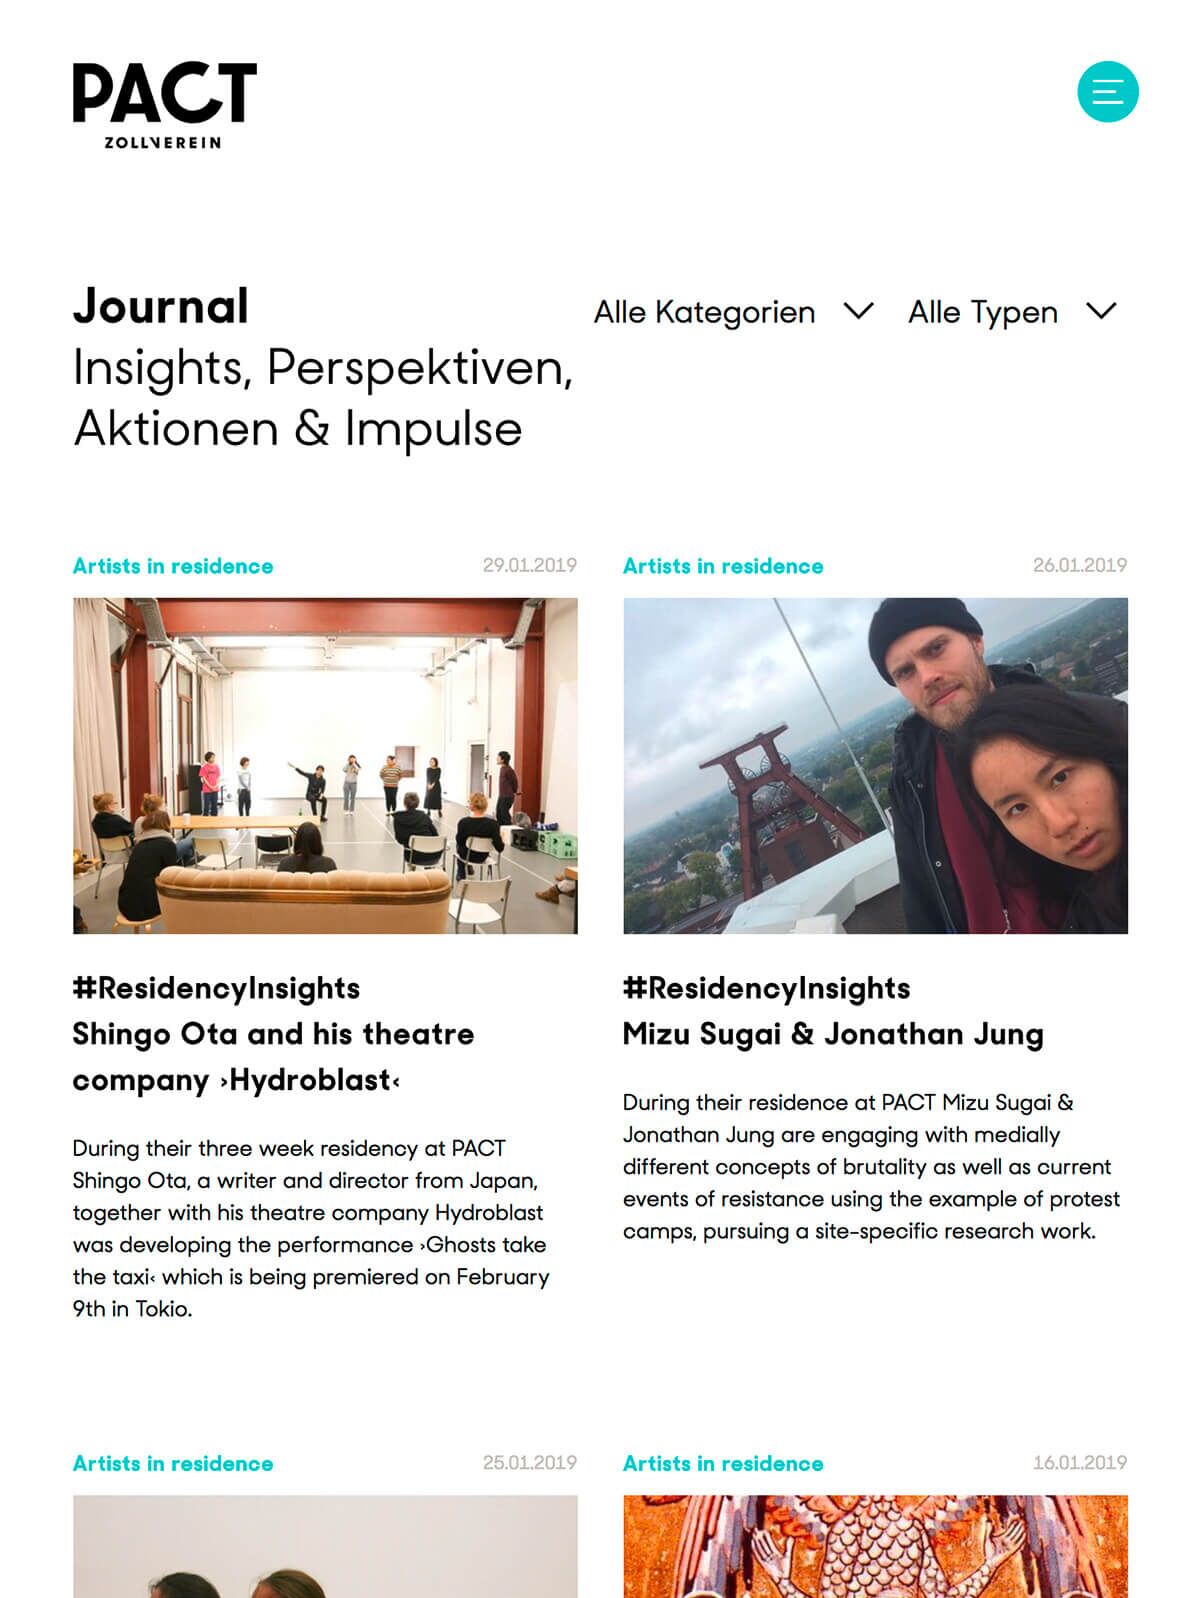 Online-Journal mit Insights, Perspektiven, Aktionen & Impulsen